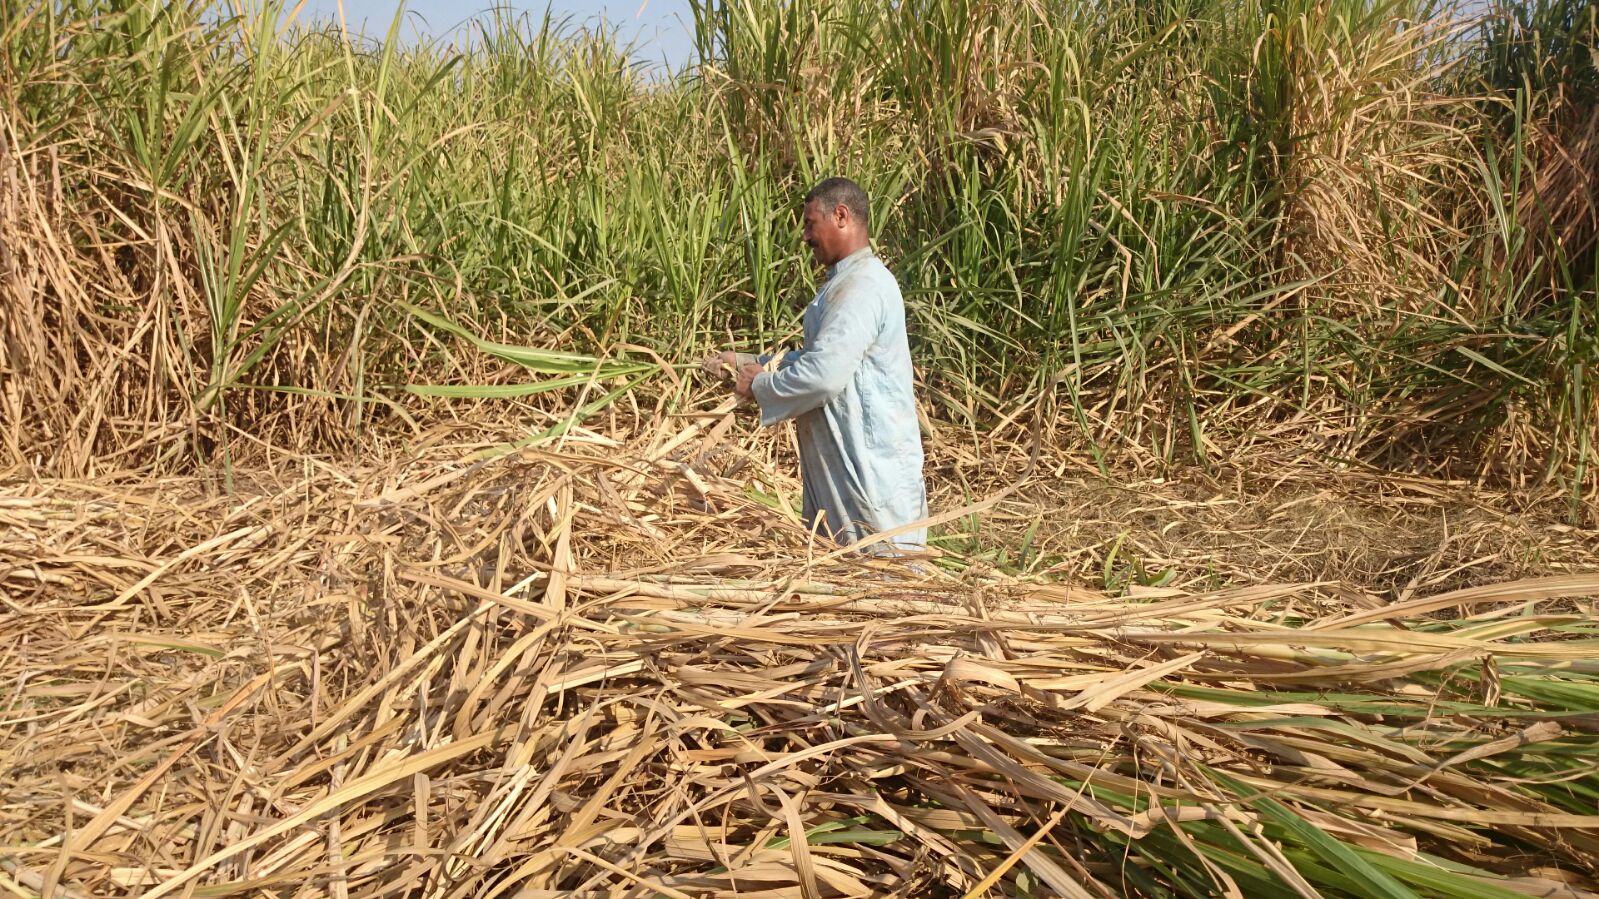   اليوم بدء موسم «كسر القصب» في جنوب الصعيد وعوده ماكينات مصانع السكر للدوران